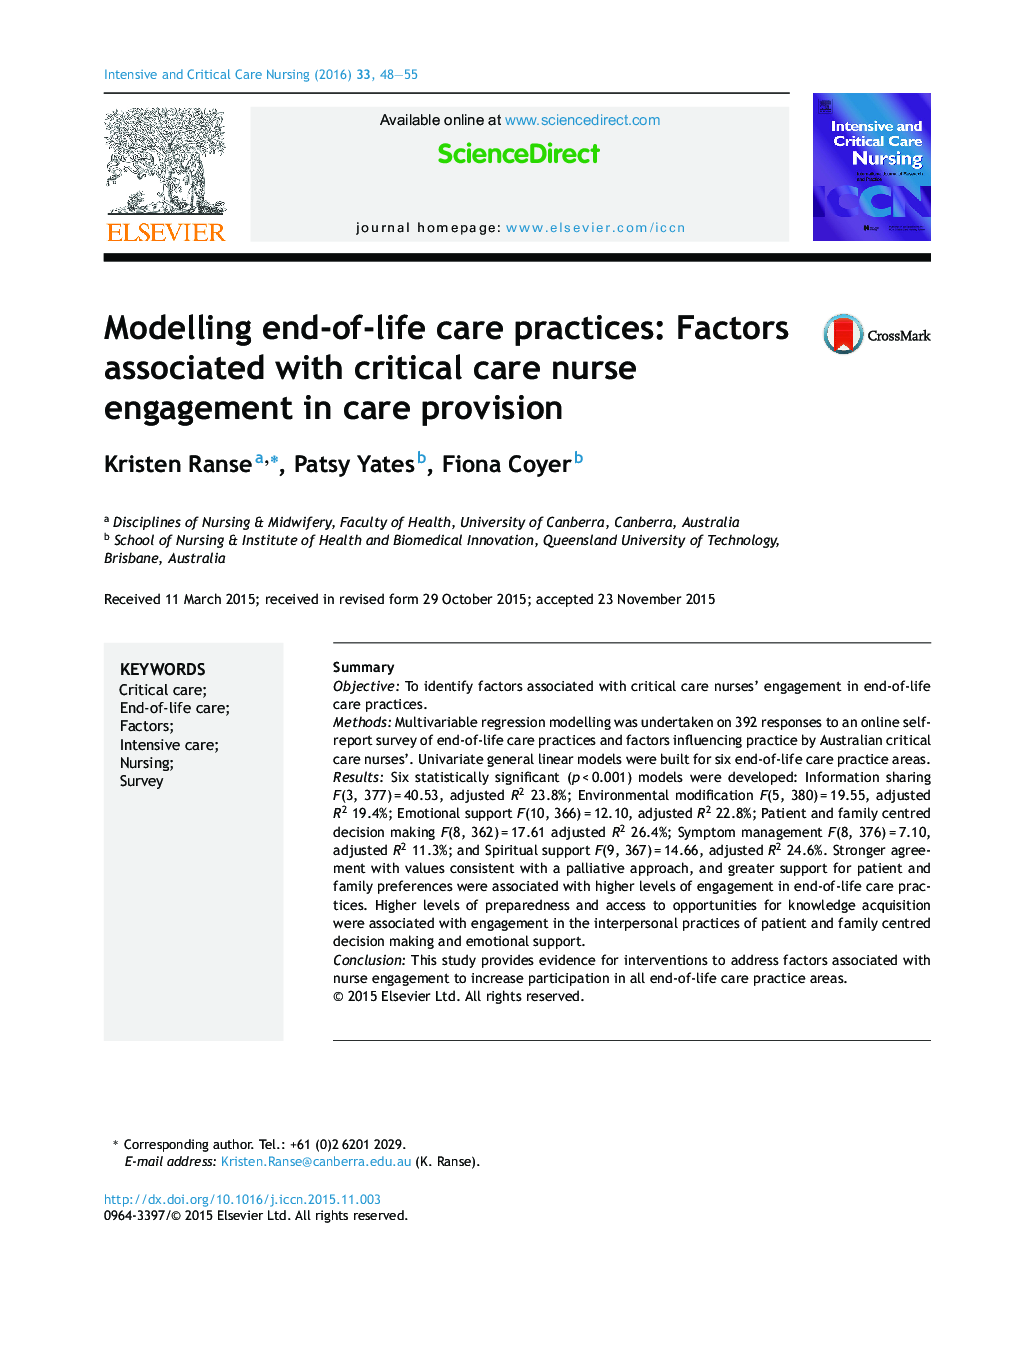 مدل سازی شیوه های مراقبت از زندگی: عوامل مرتبط با مشارکت پرستاران مراقبت های ویژه در ارائه مراقبت